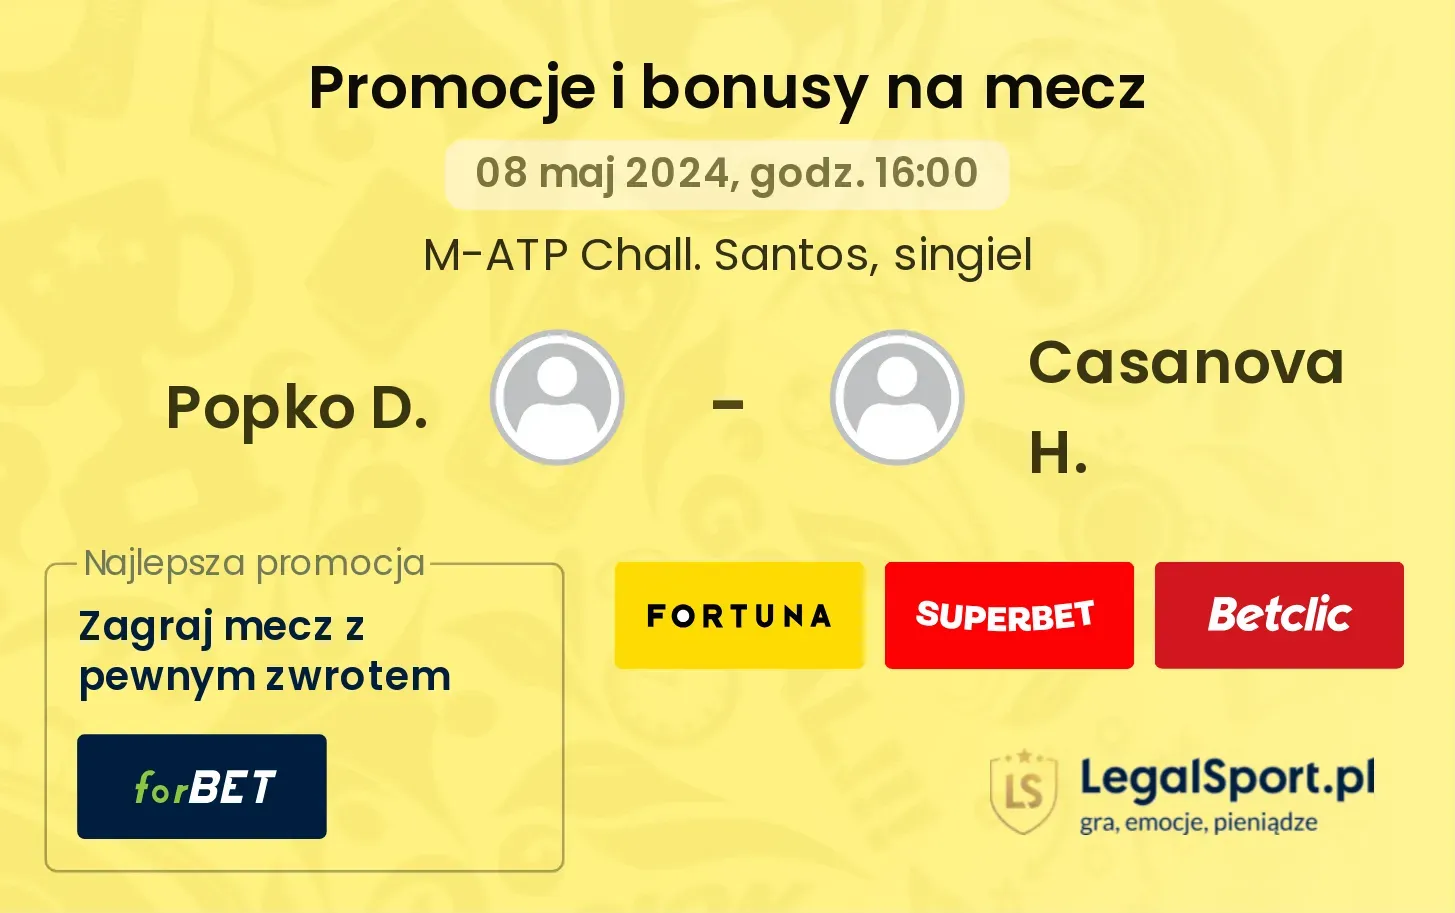 Popko D. - Casanova H. promocje bonusy na mecz